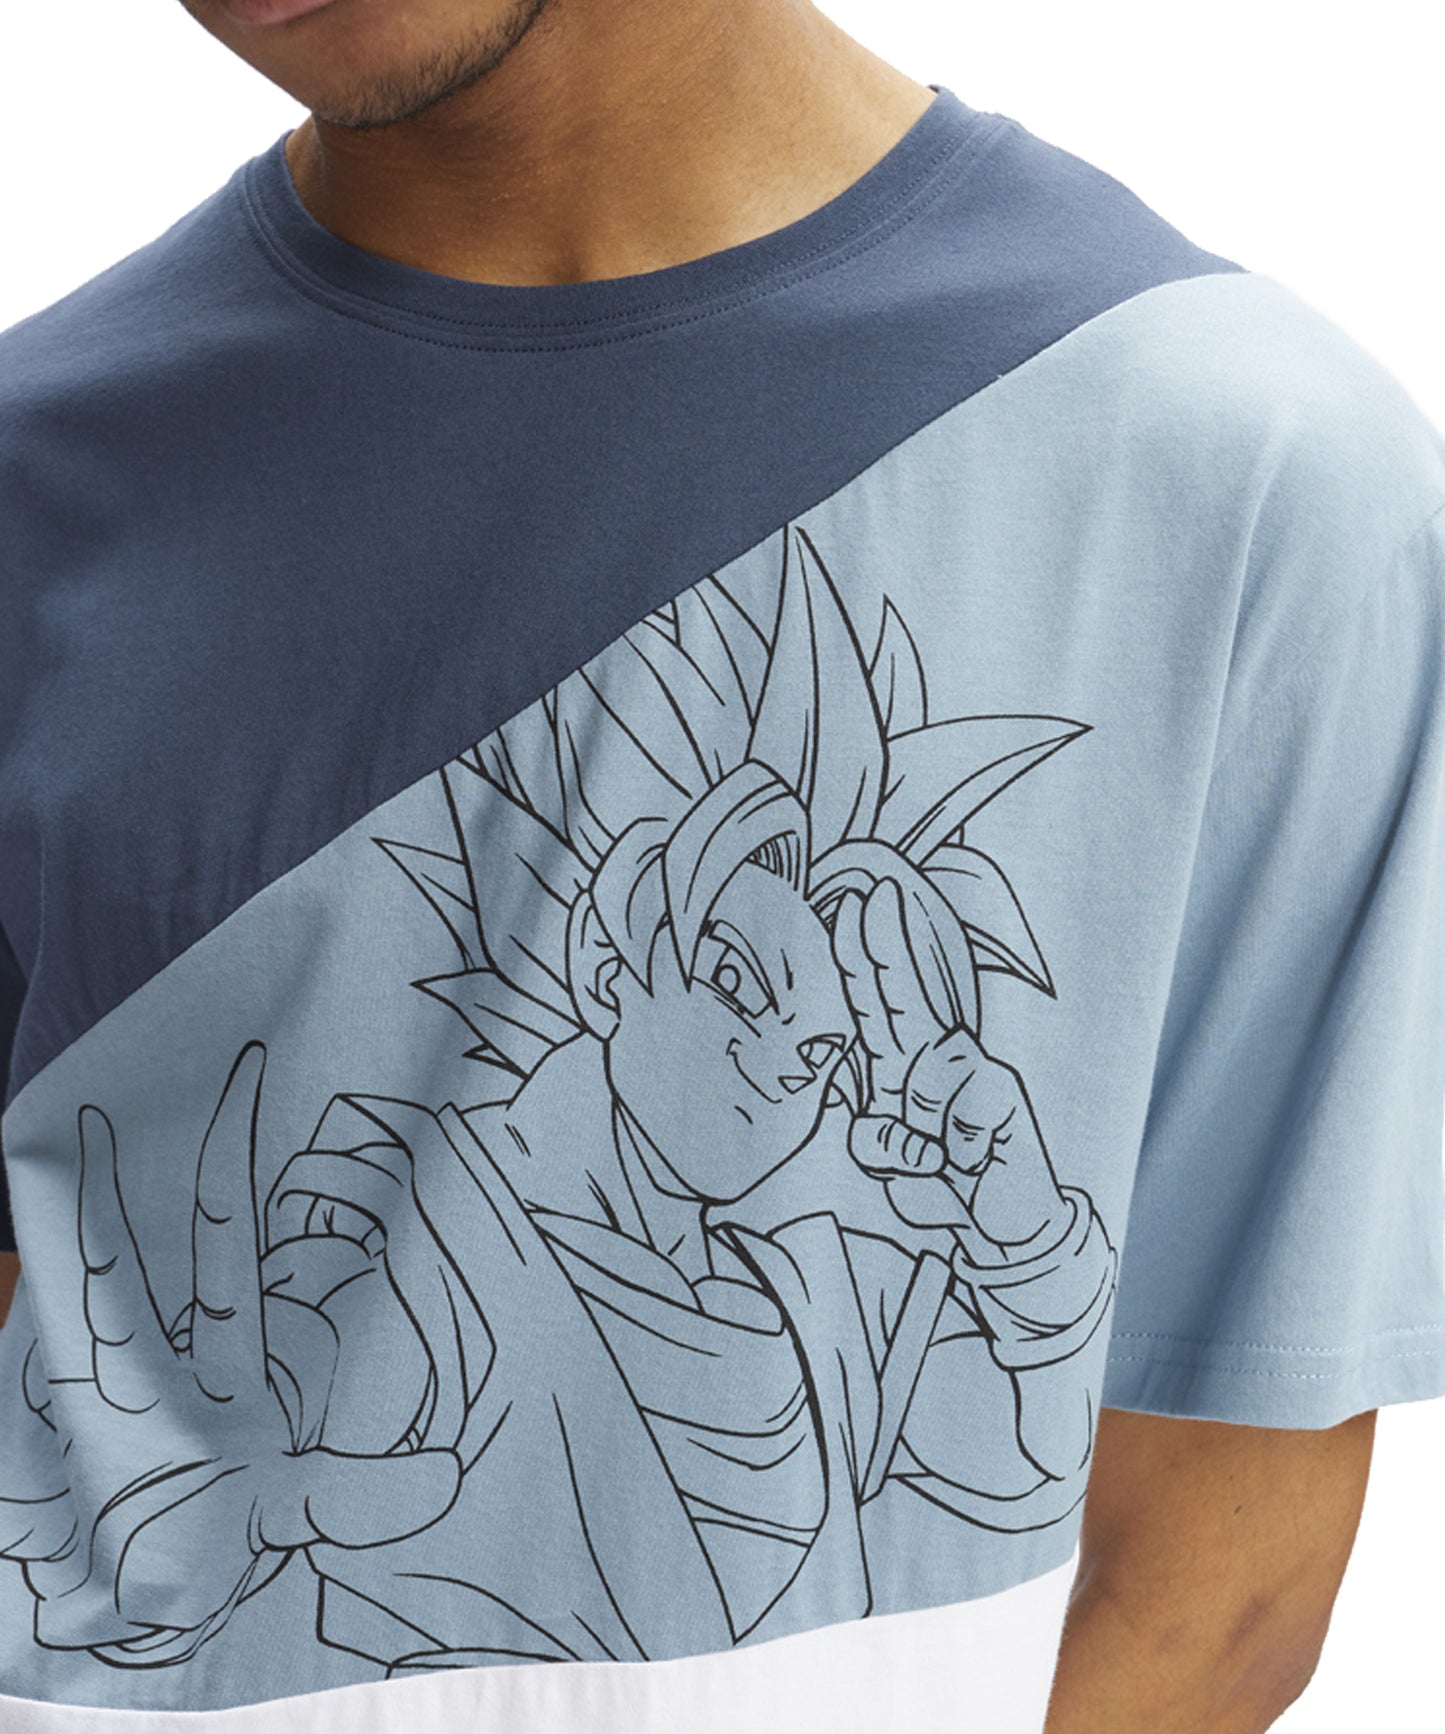 hydroponic-camiseta-dragon-ball-z-line-color-azul-denim-y-blanco-manga-corta-algodón 100%-serigrafía-dragon-ball-en-el-pecho